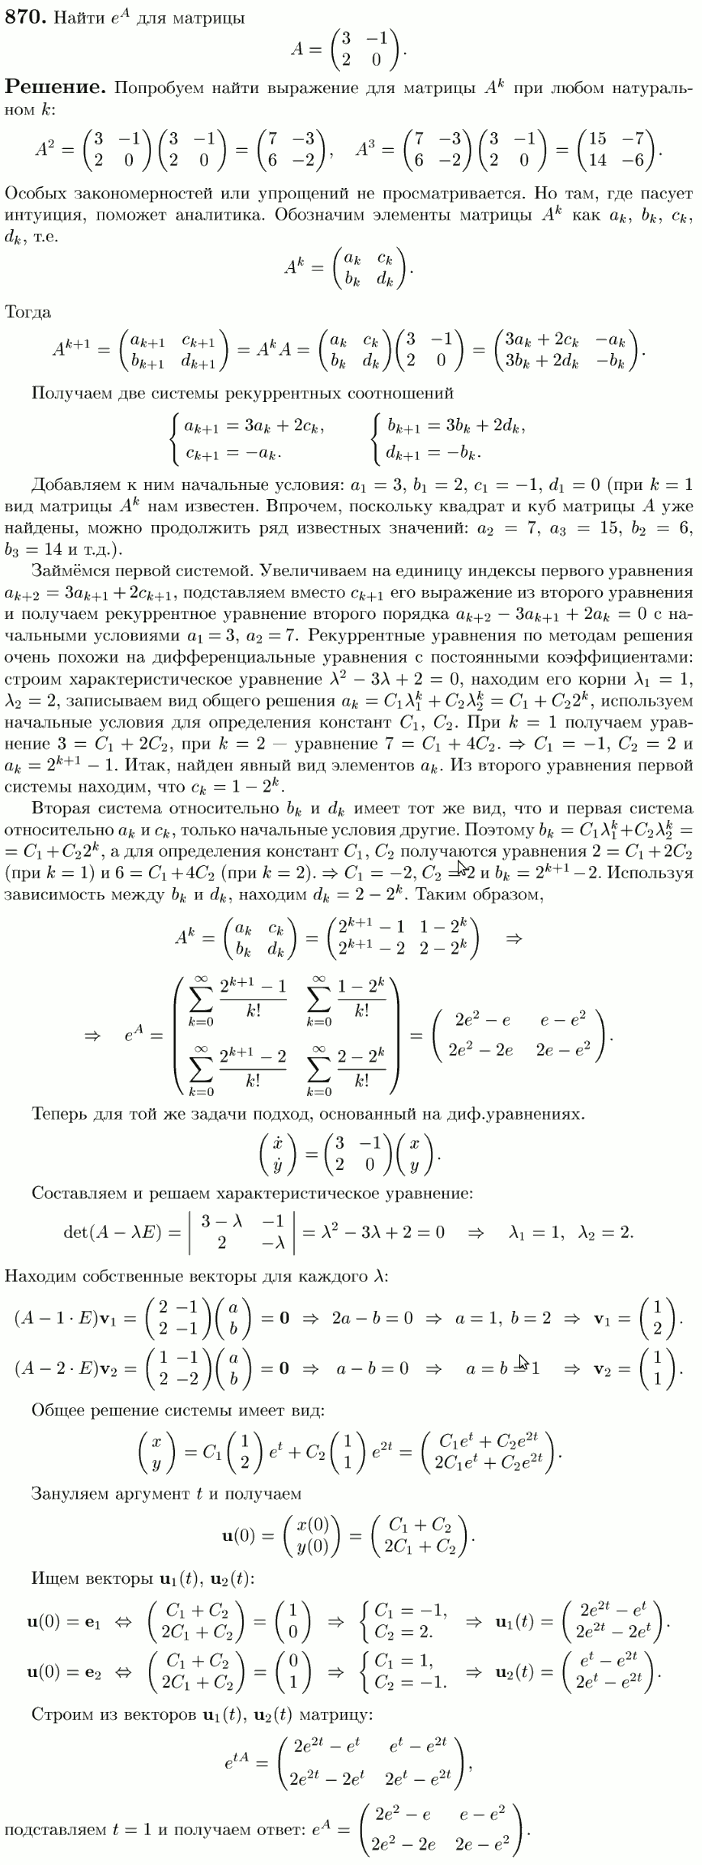 Линейные системы с постоянными коэффициентами - решение задачи 870